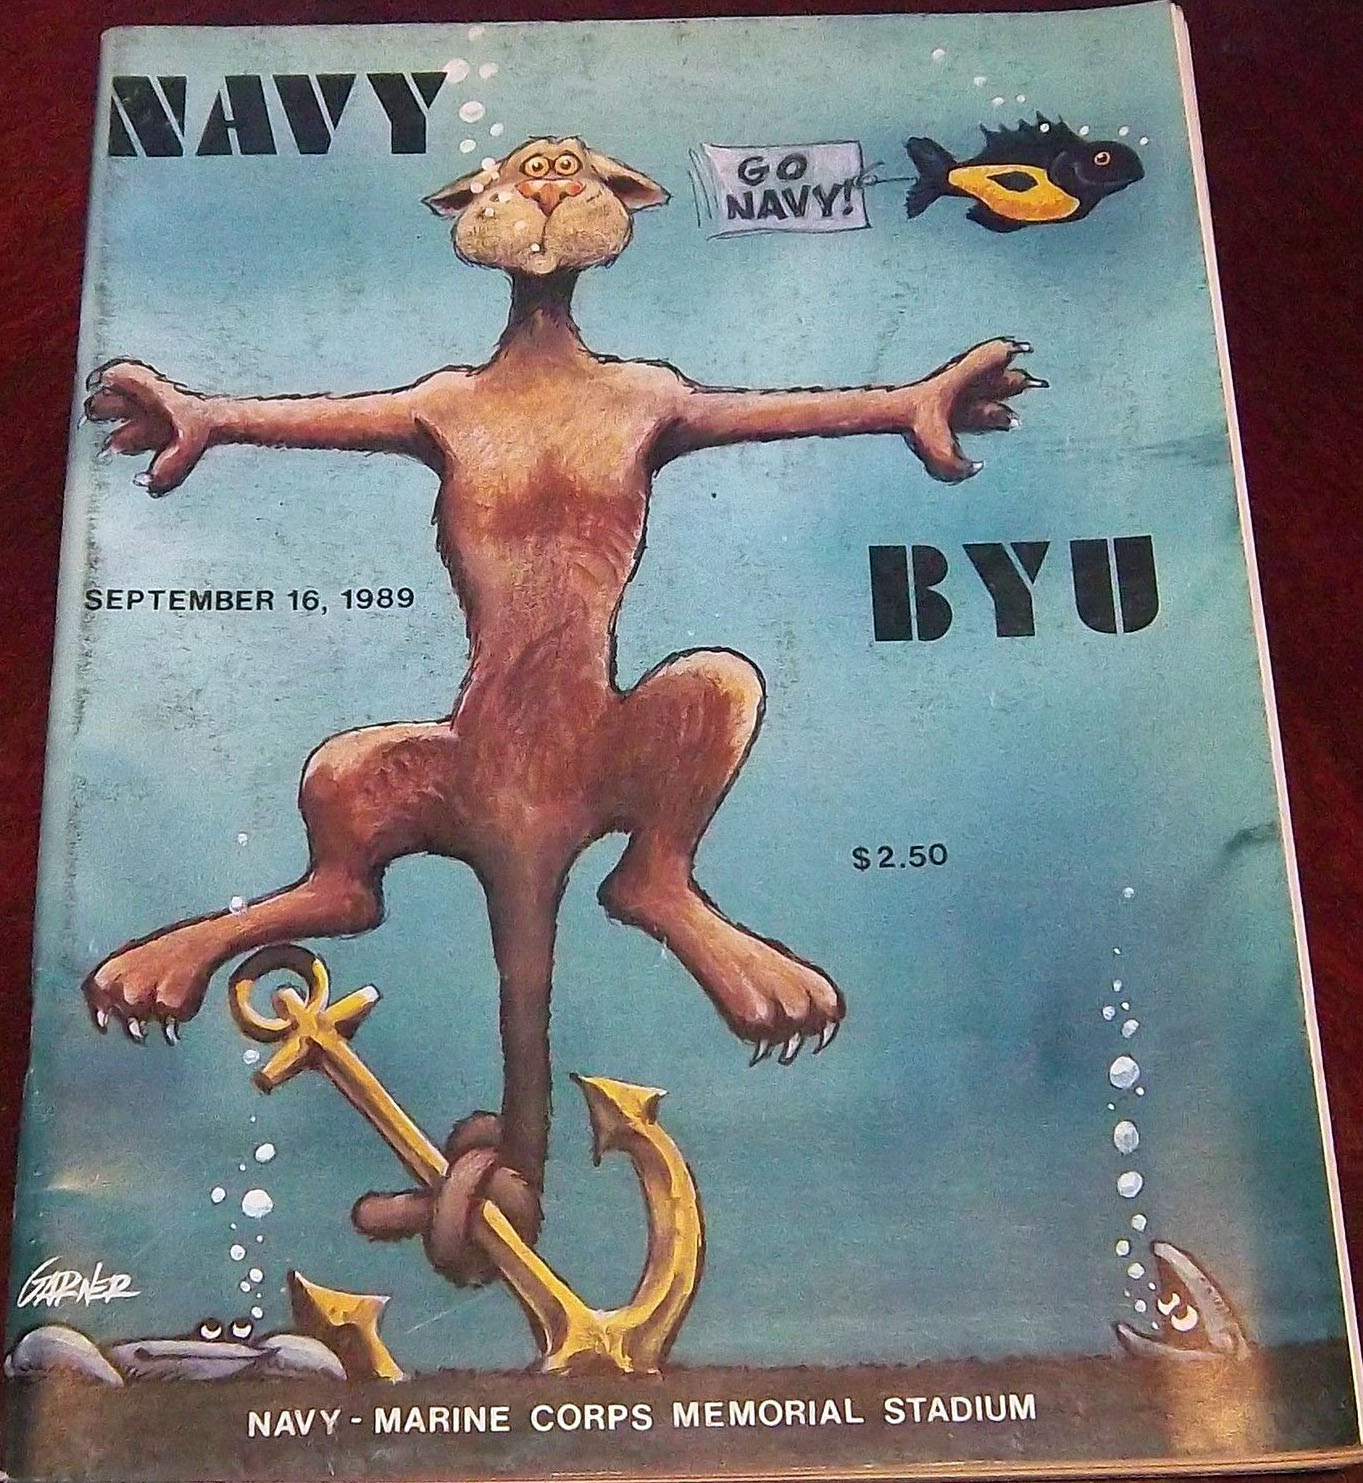 College Football Program: Navy Midshipmen vs. BYU Cougars (September 16, 1989)